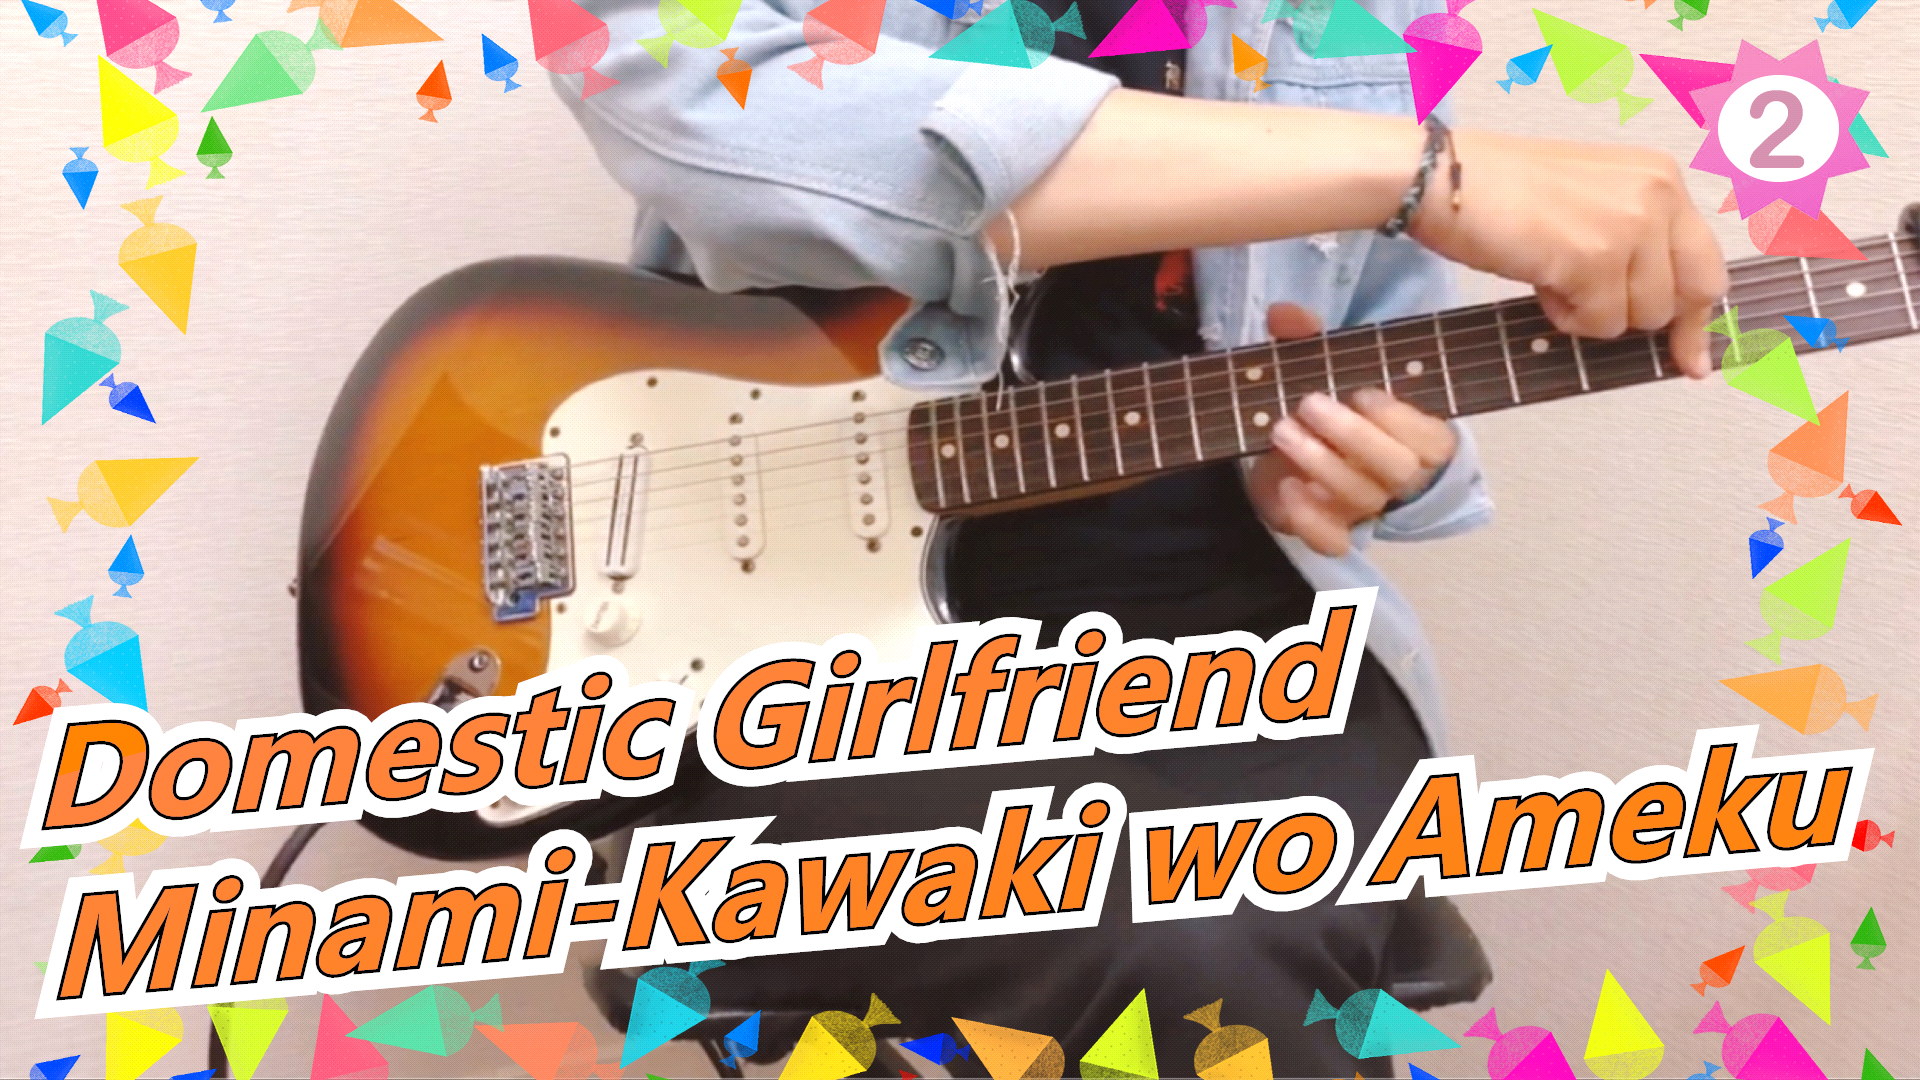 Kawaki wo Ameku by Minami  Domestic Girlfriend Opening Song 